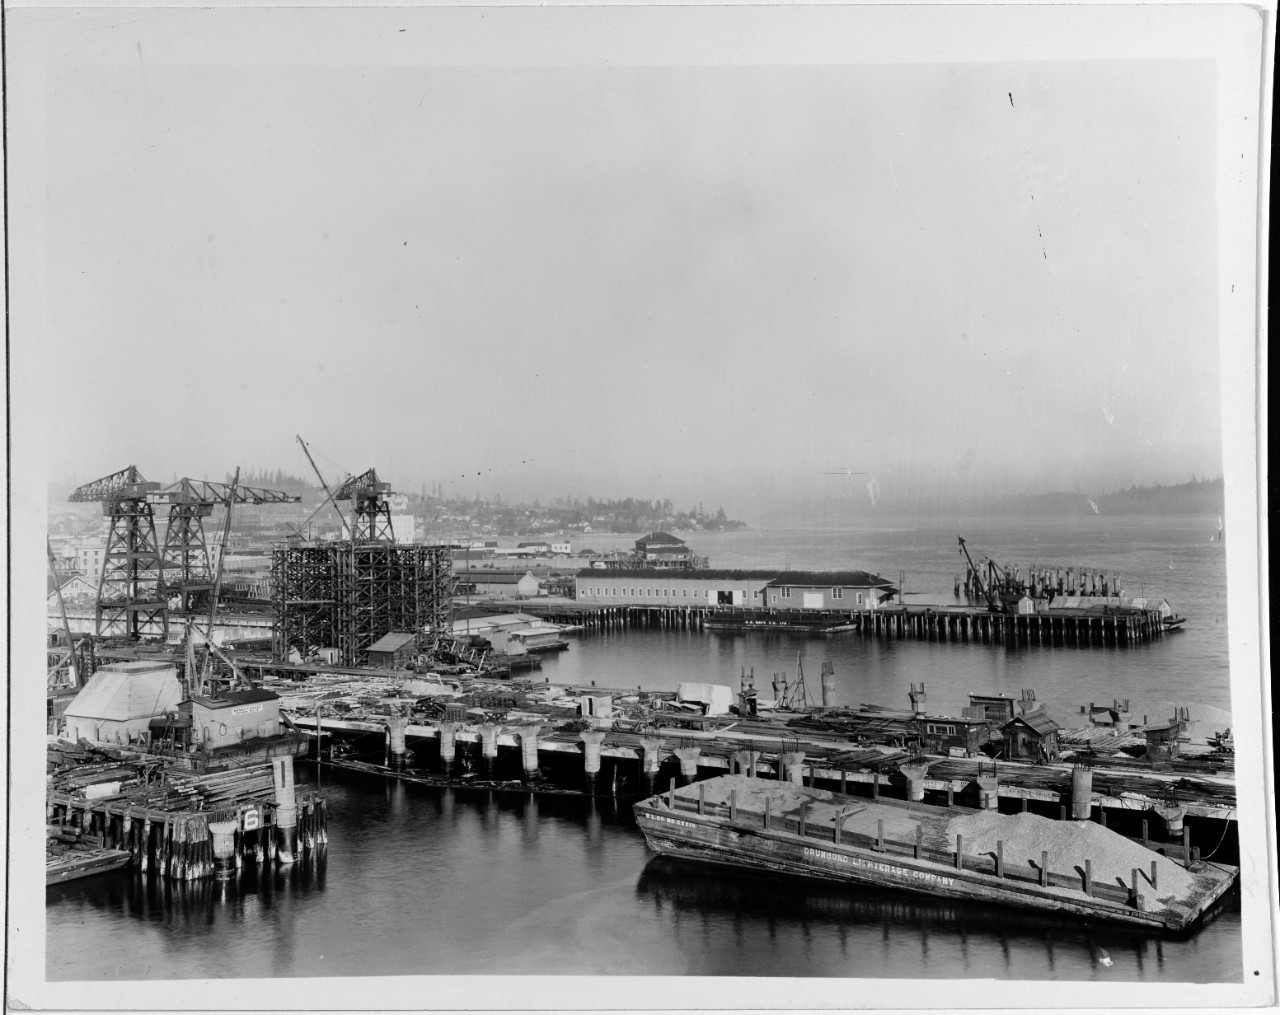 Puget Sound Navy Yard